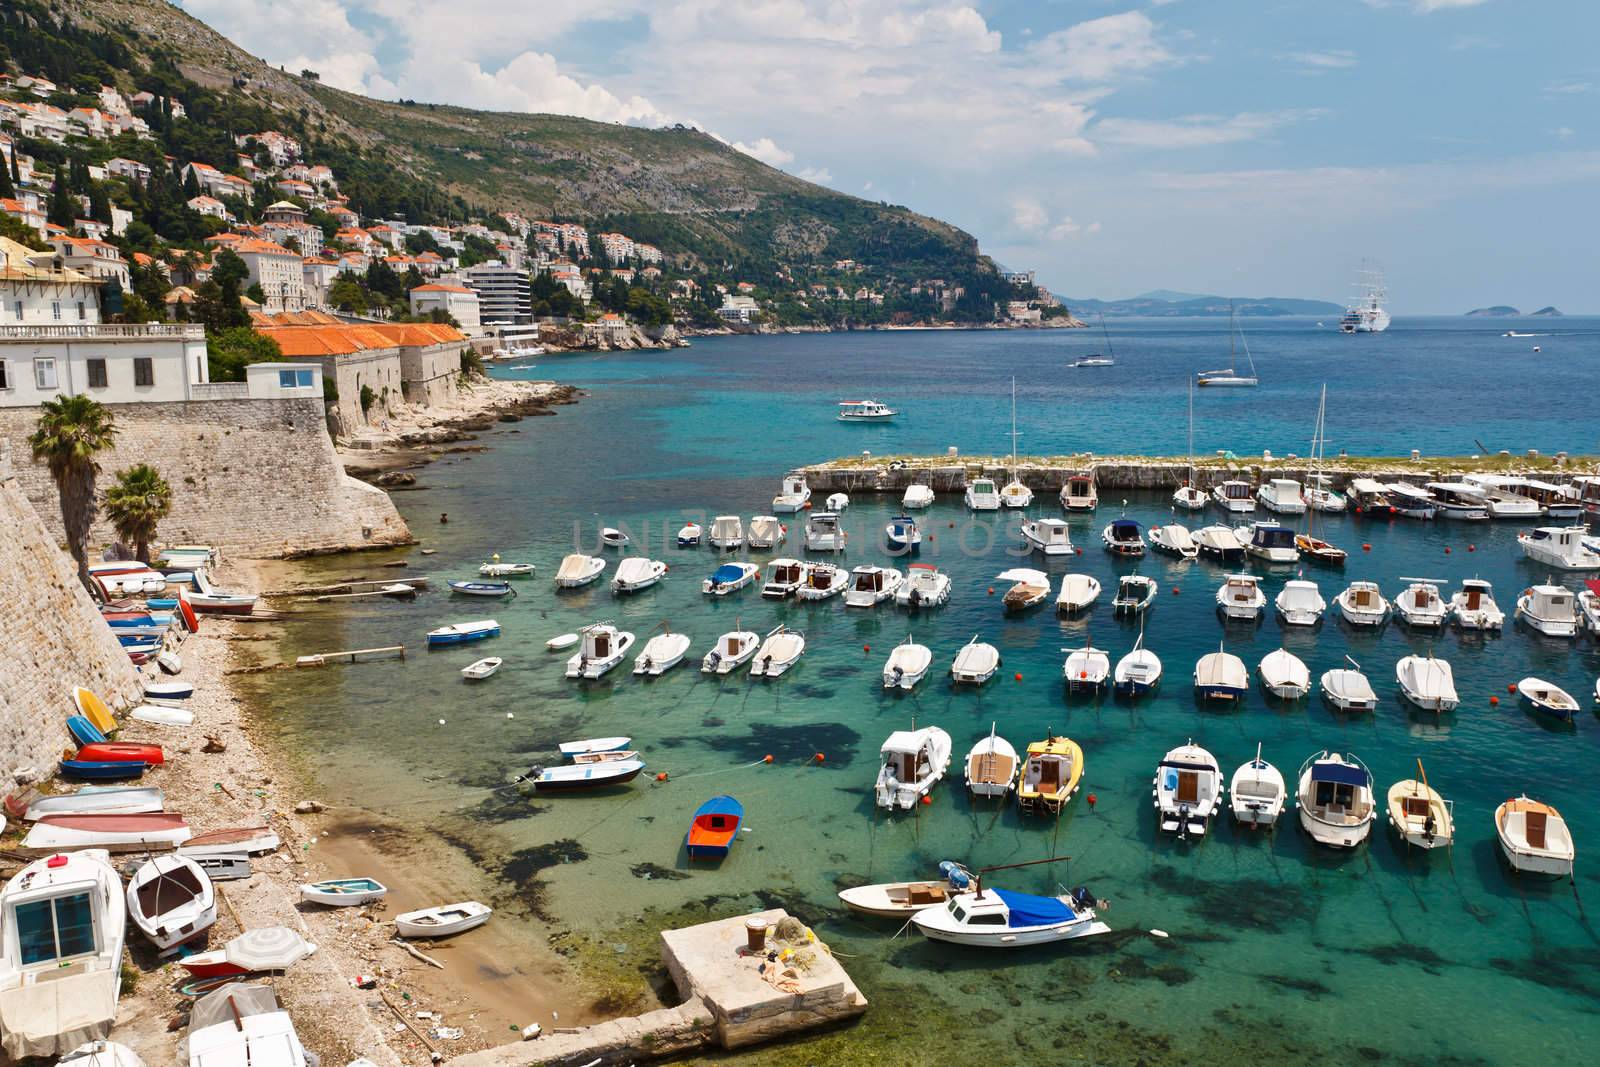 Panorama of Dubrovnik Marina with Many Docked Boats, Croatia